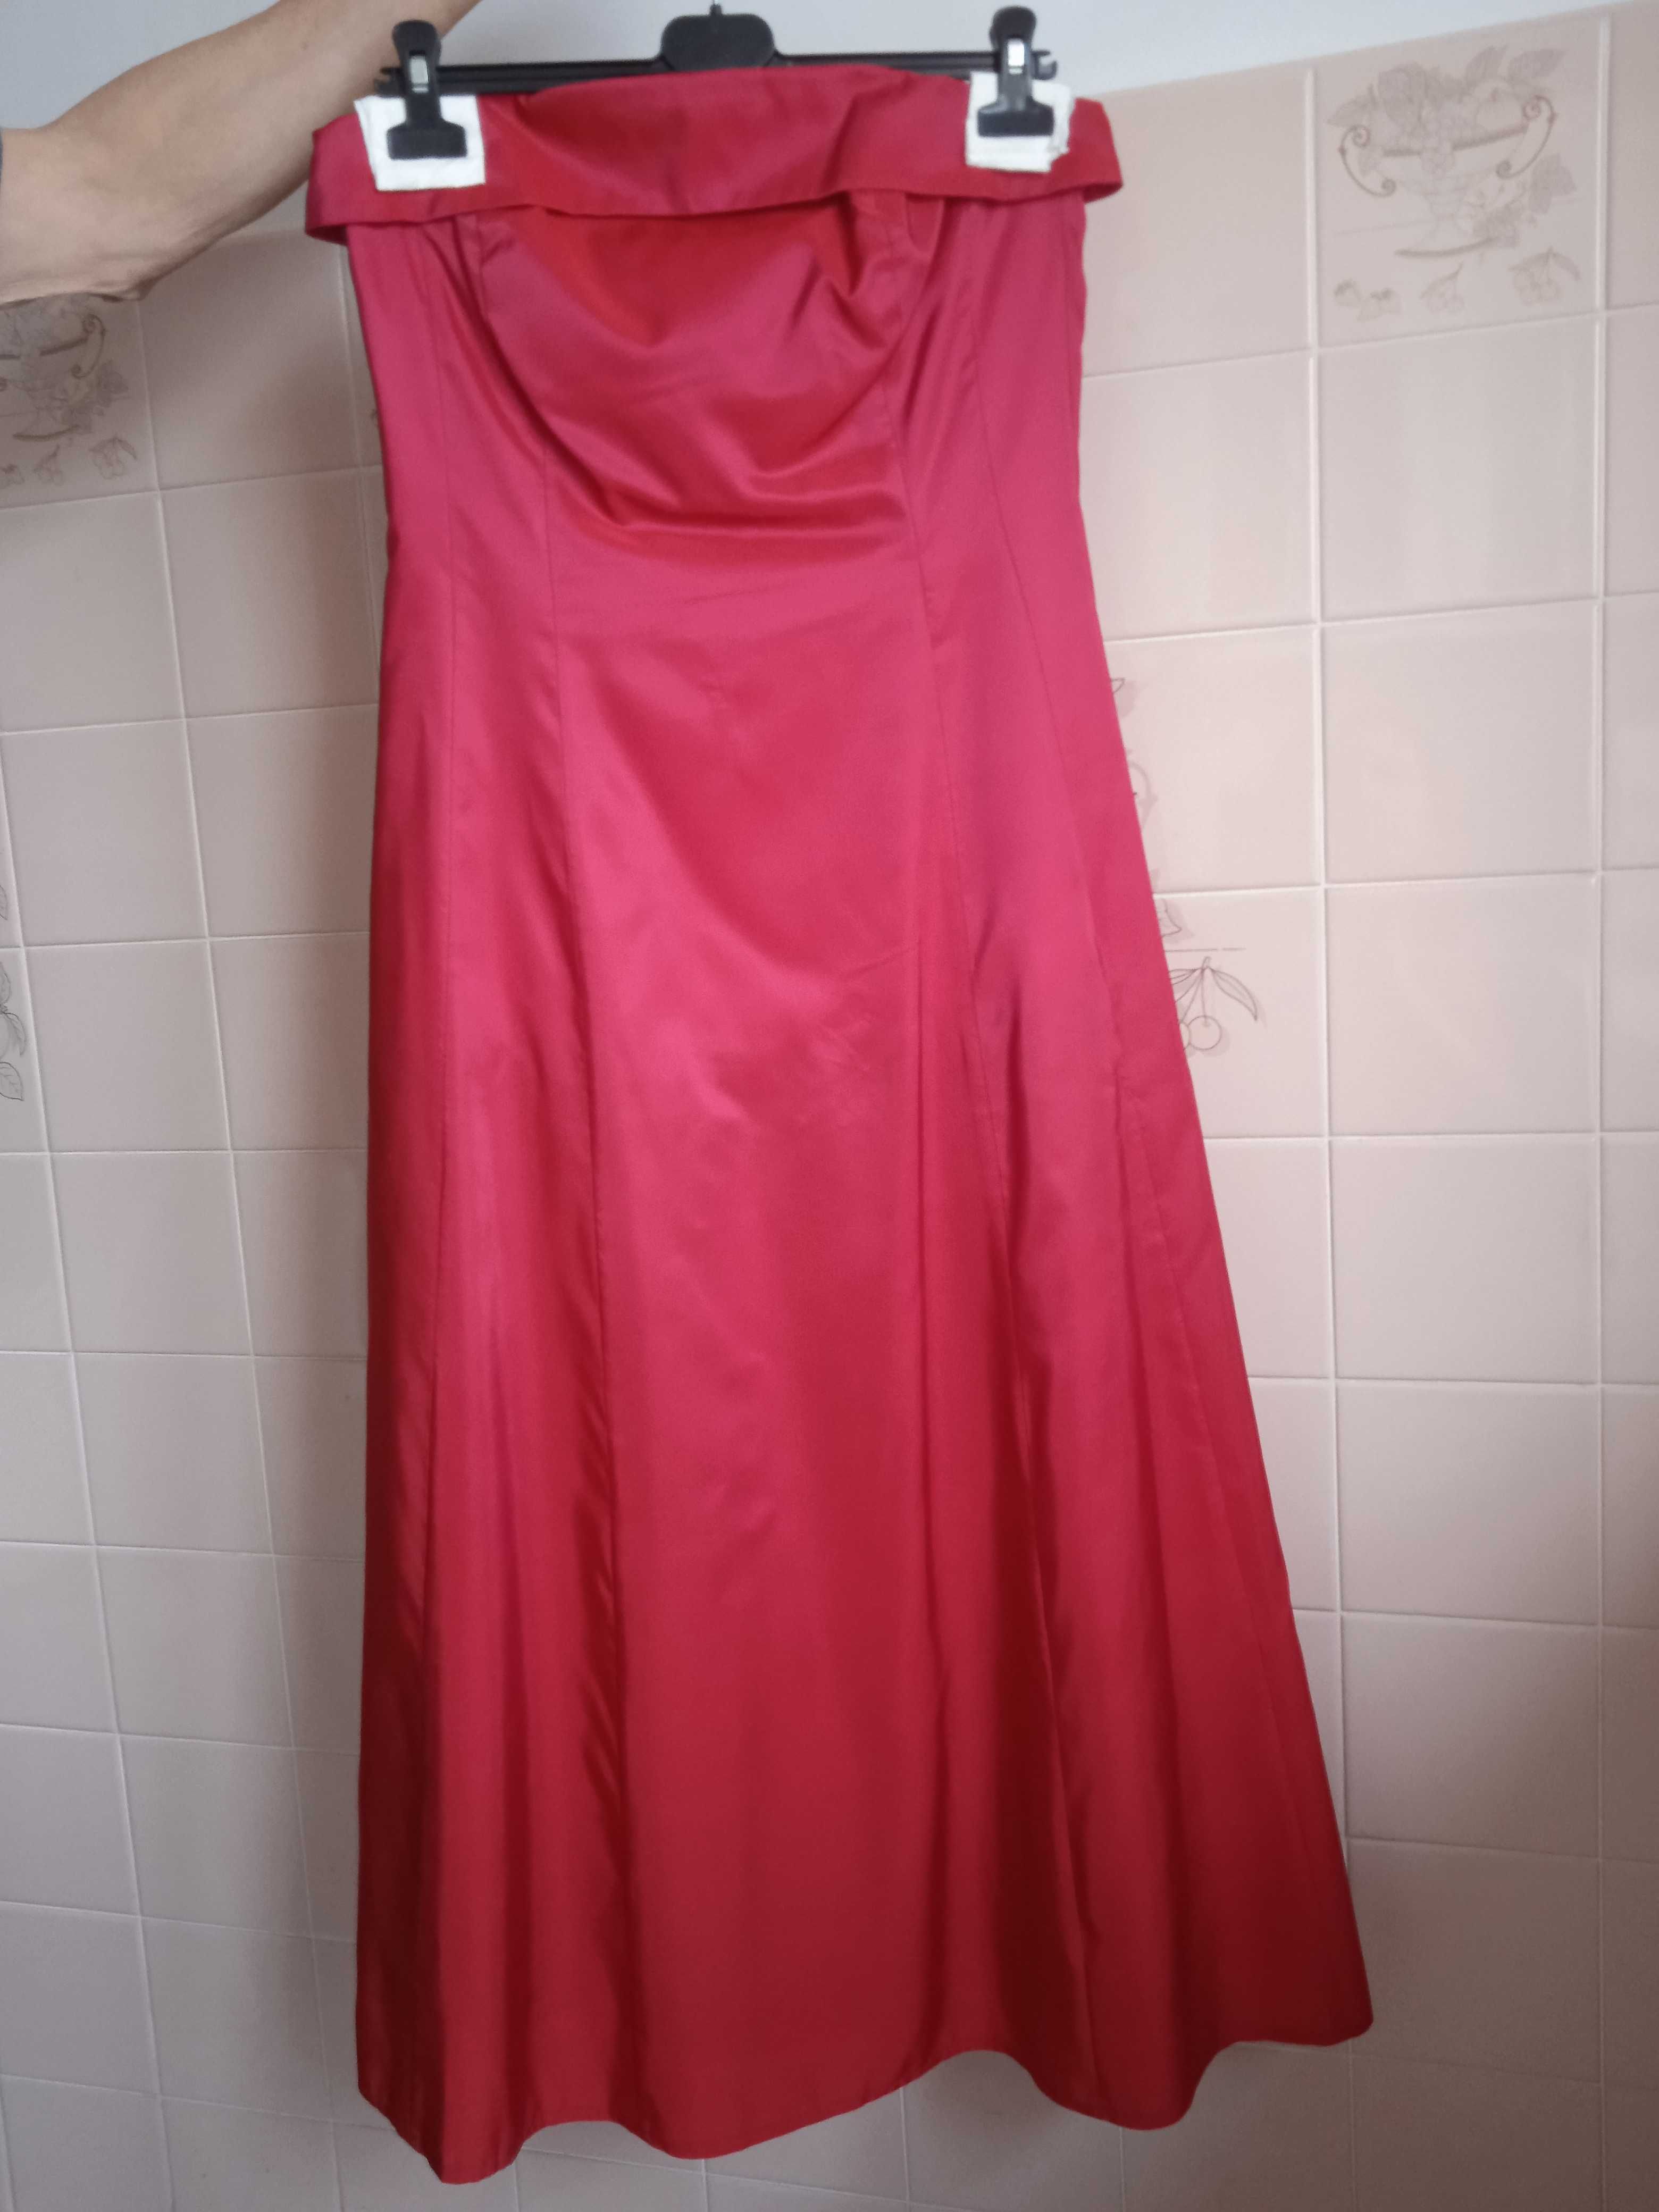 Suknia wieczorowa czerwona rozm. 38 firmy SWING